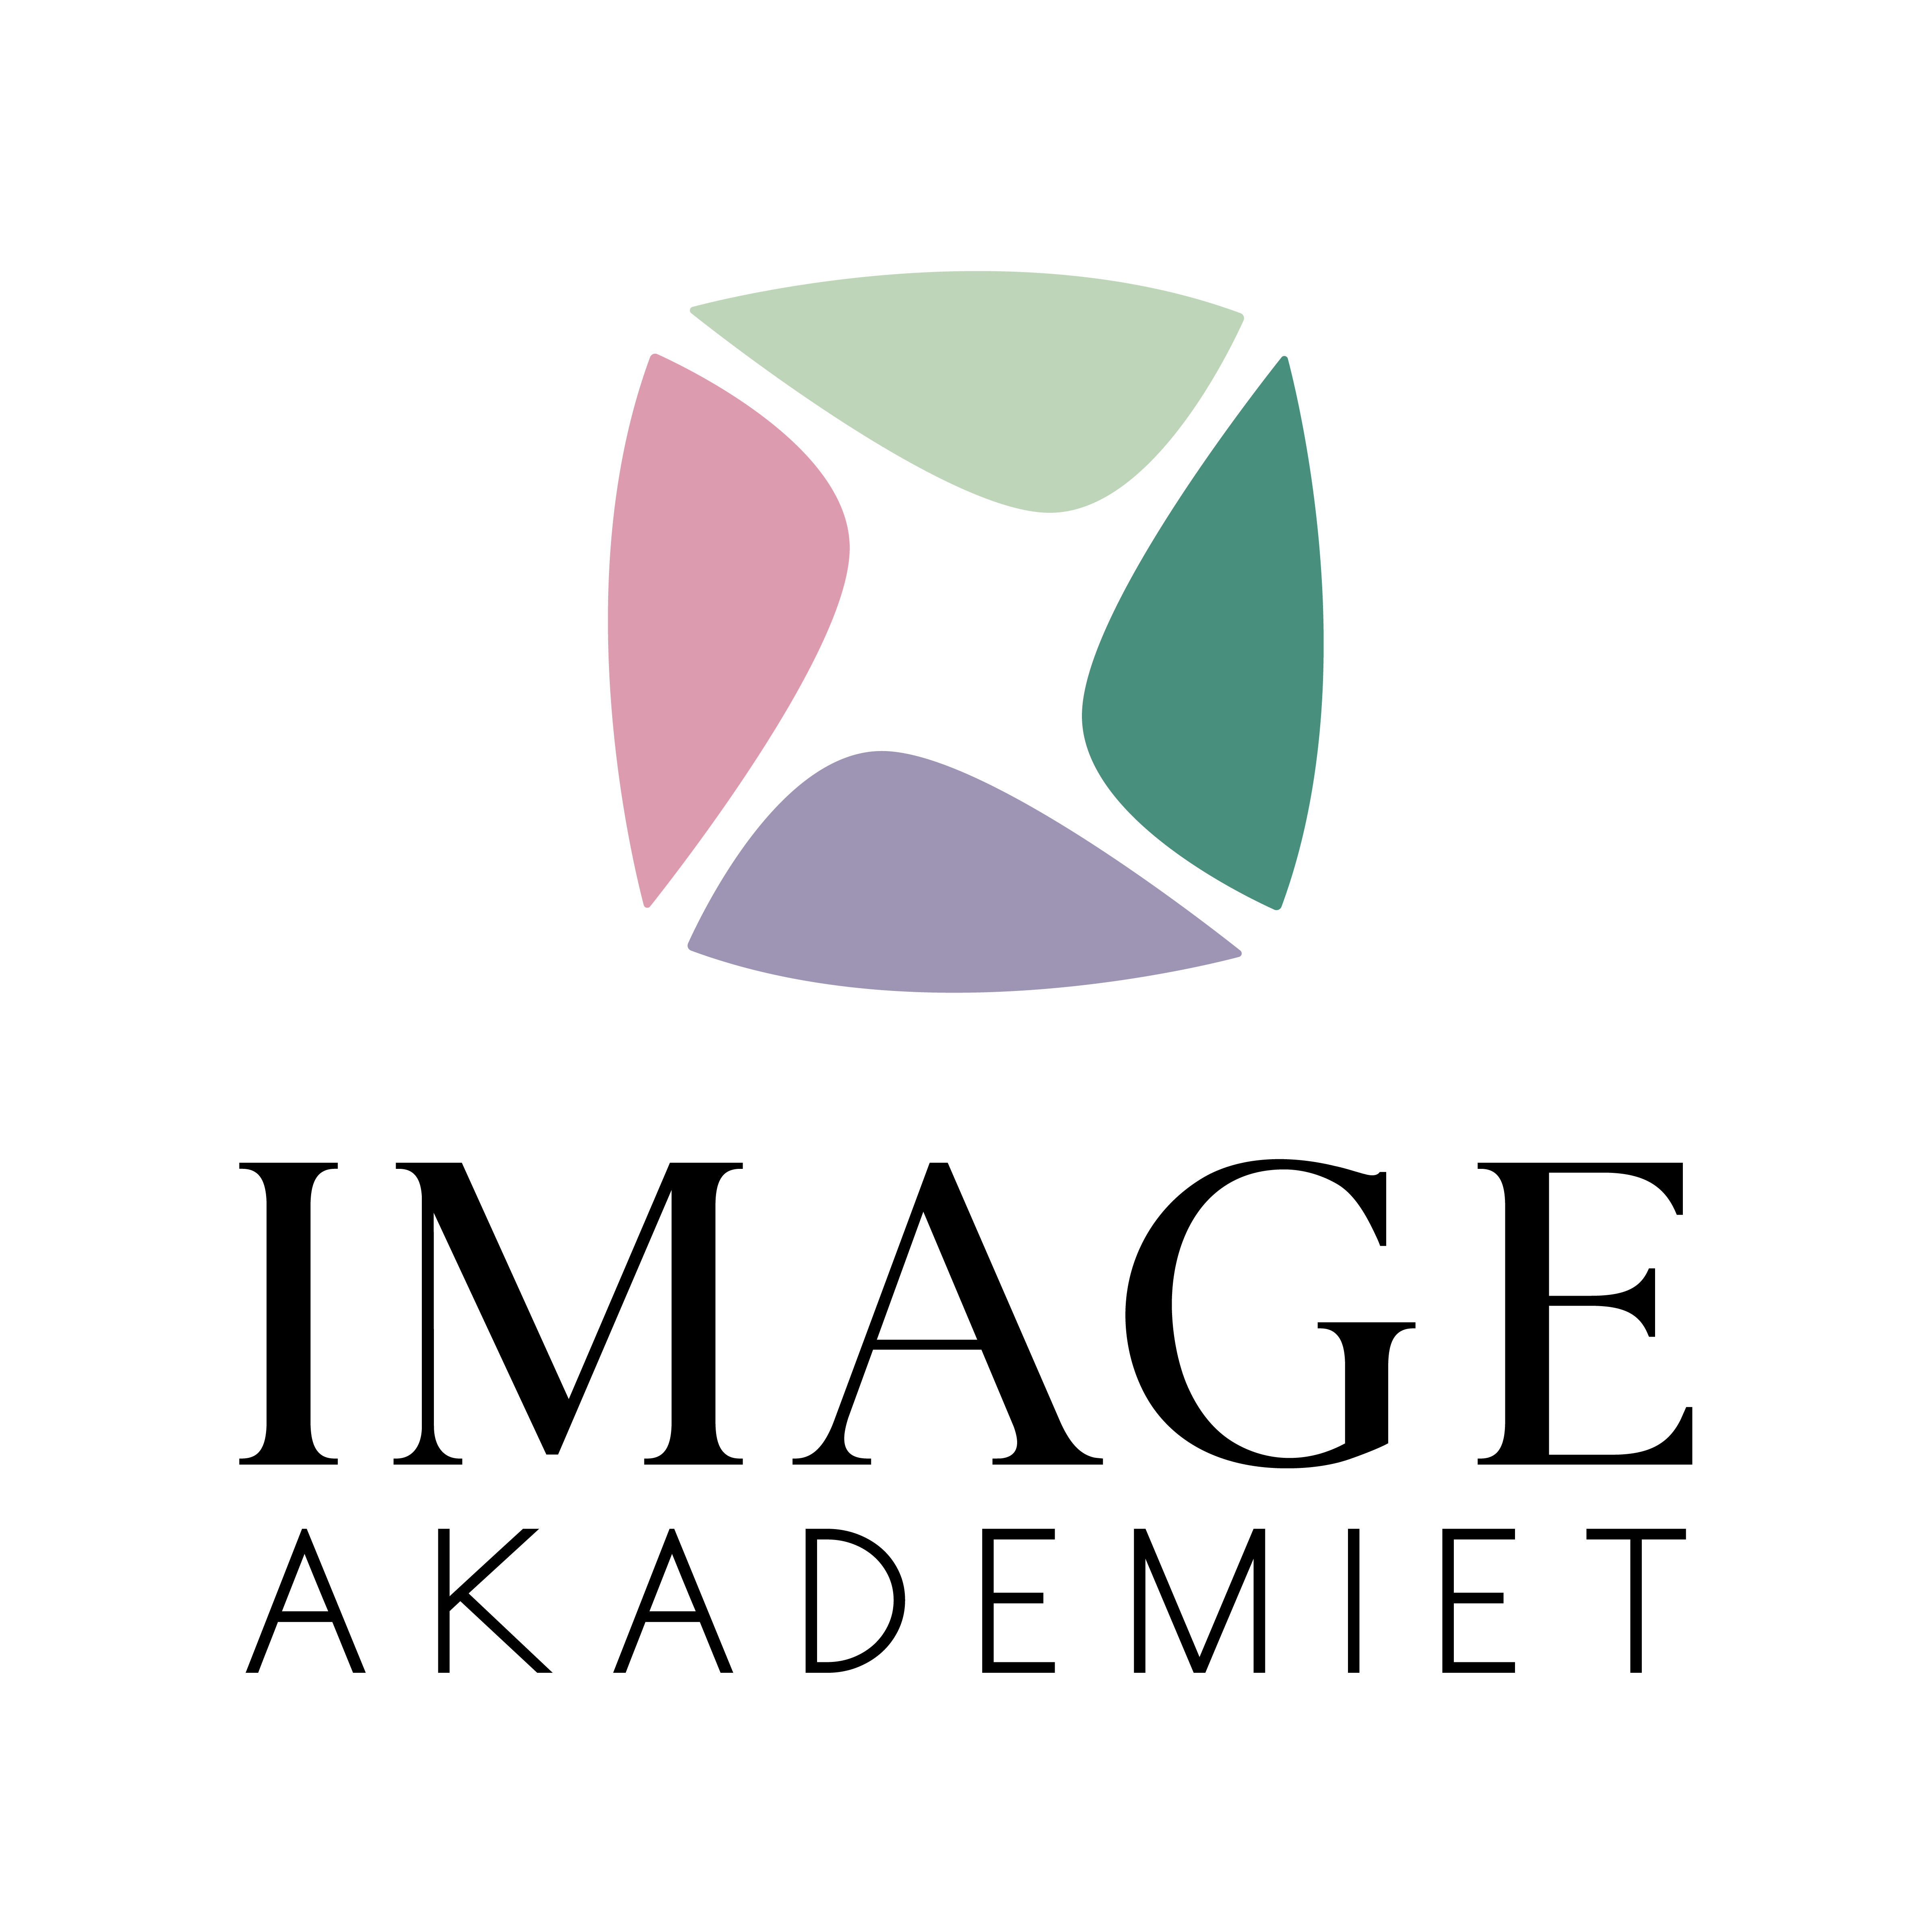 Imageakademiet logo